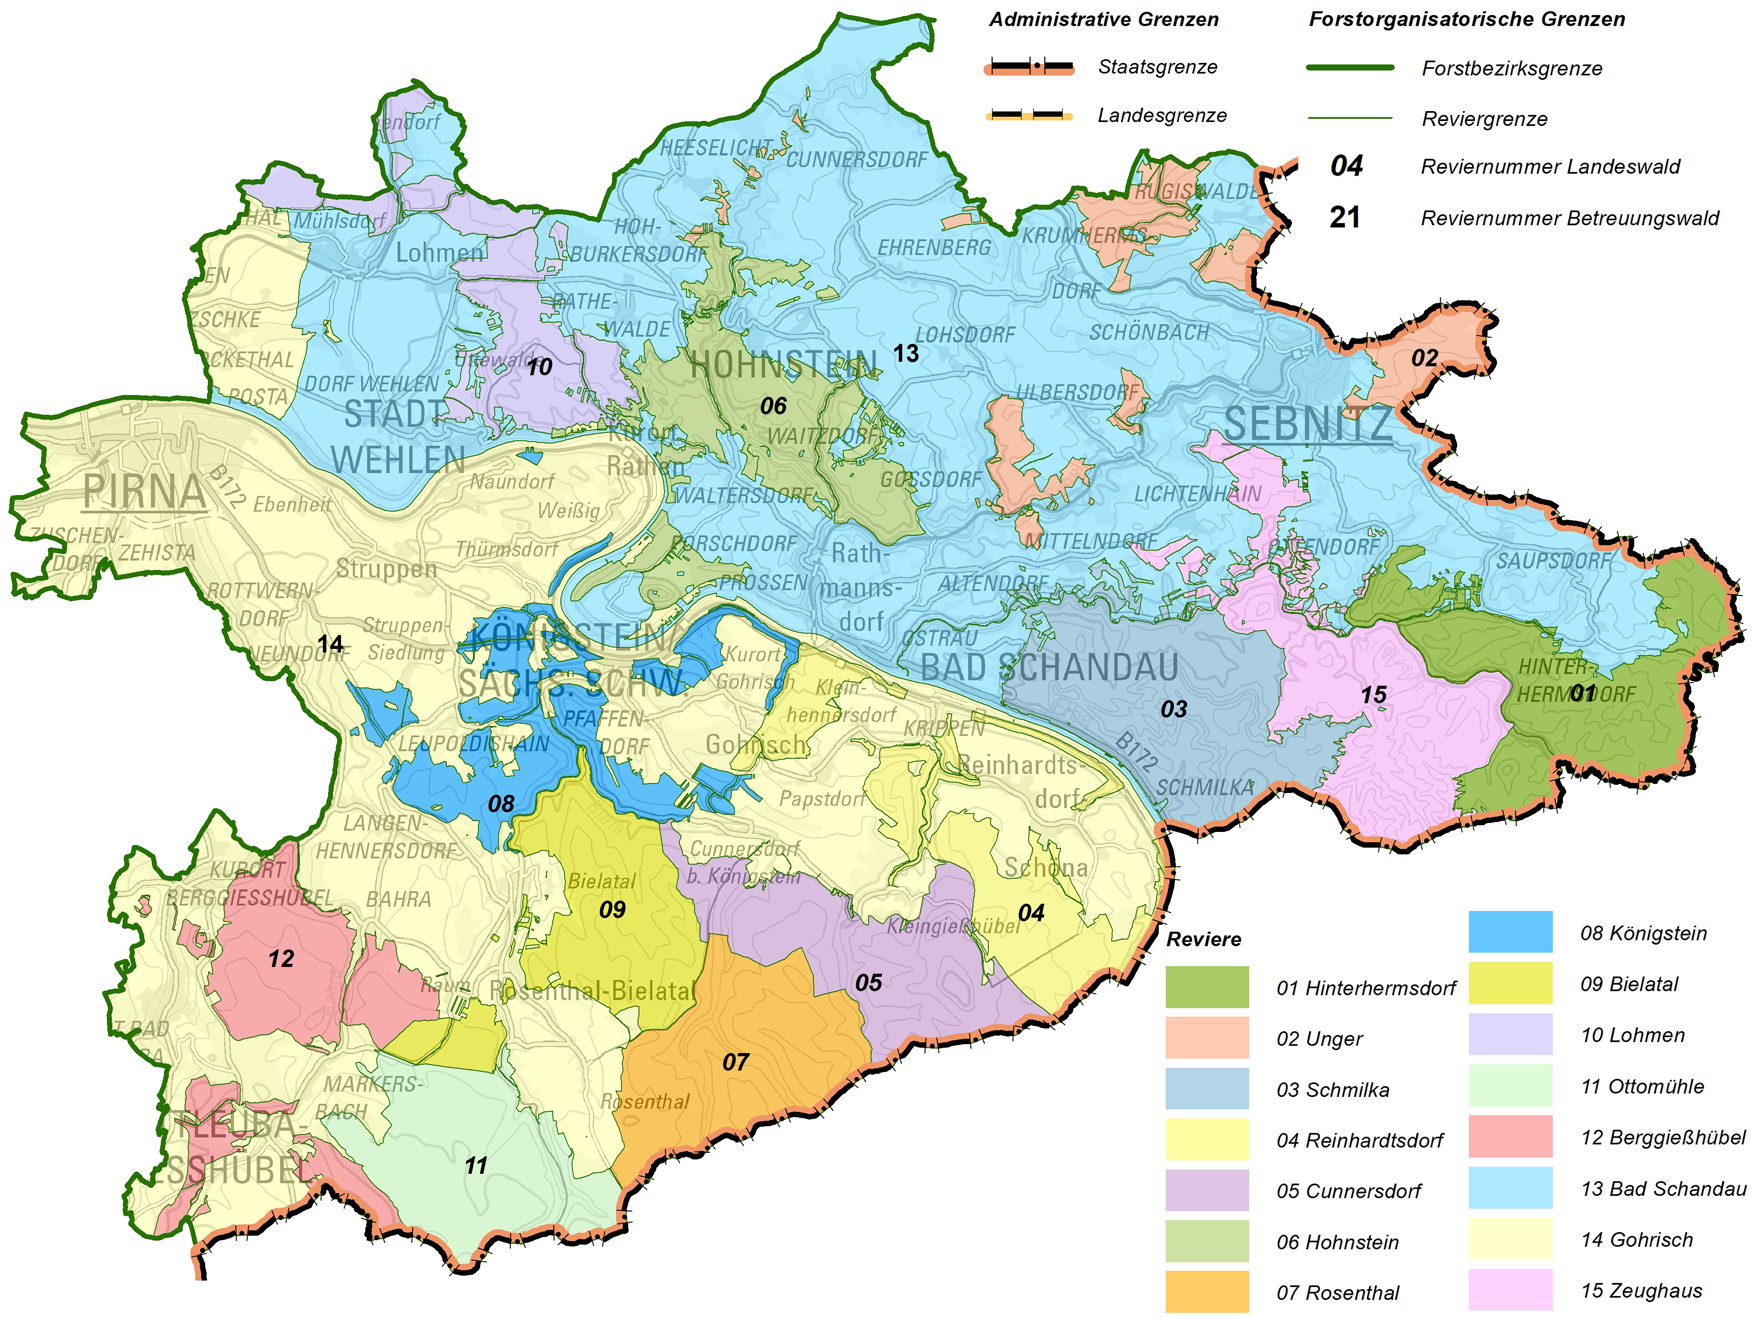 Übersichtskarte der Nationalpark- und Forstverwaltung Sächsische Schweiz